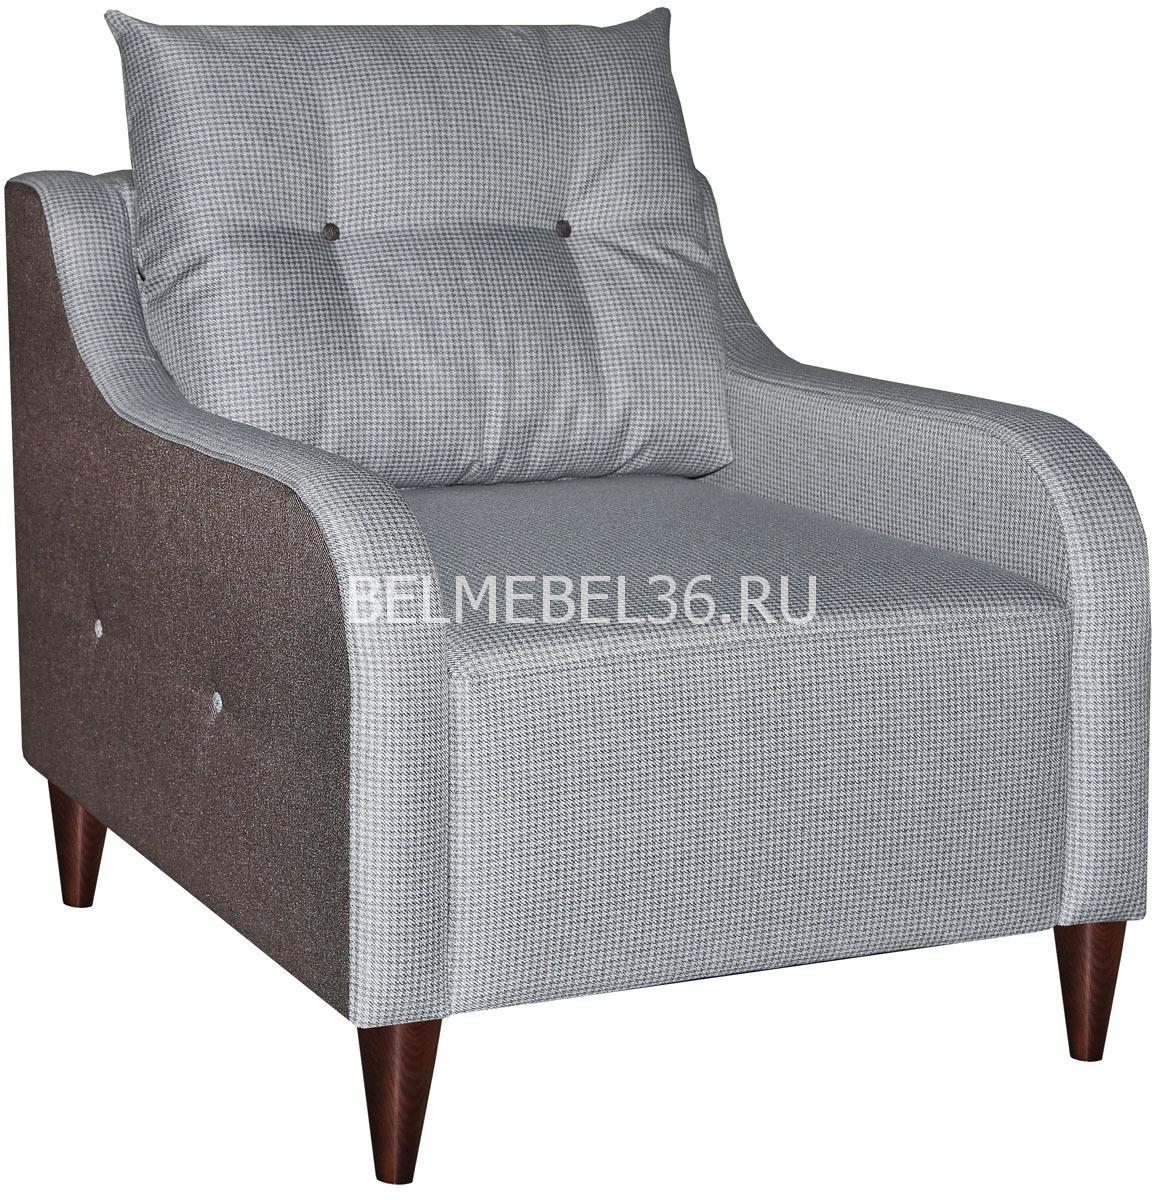 Кресло Дженсен (12) П-Д144 | Белорусская мебель в Воронеже